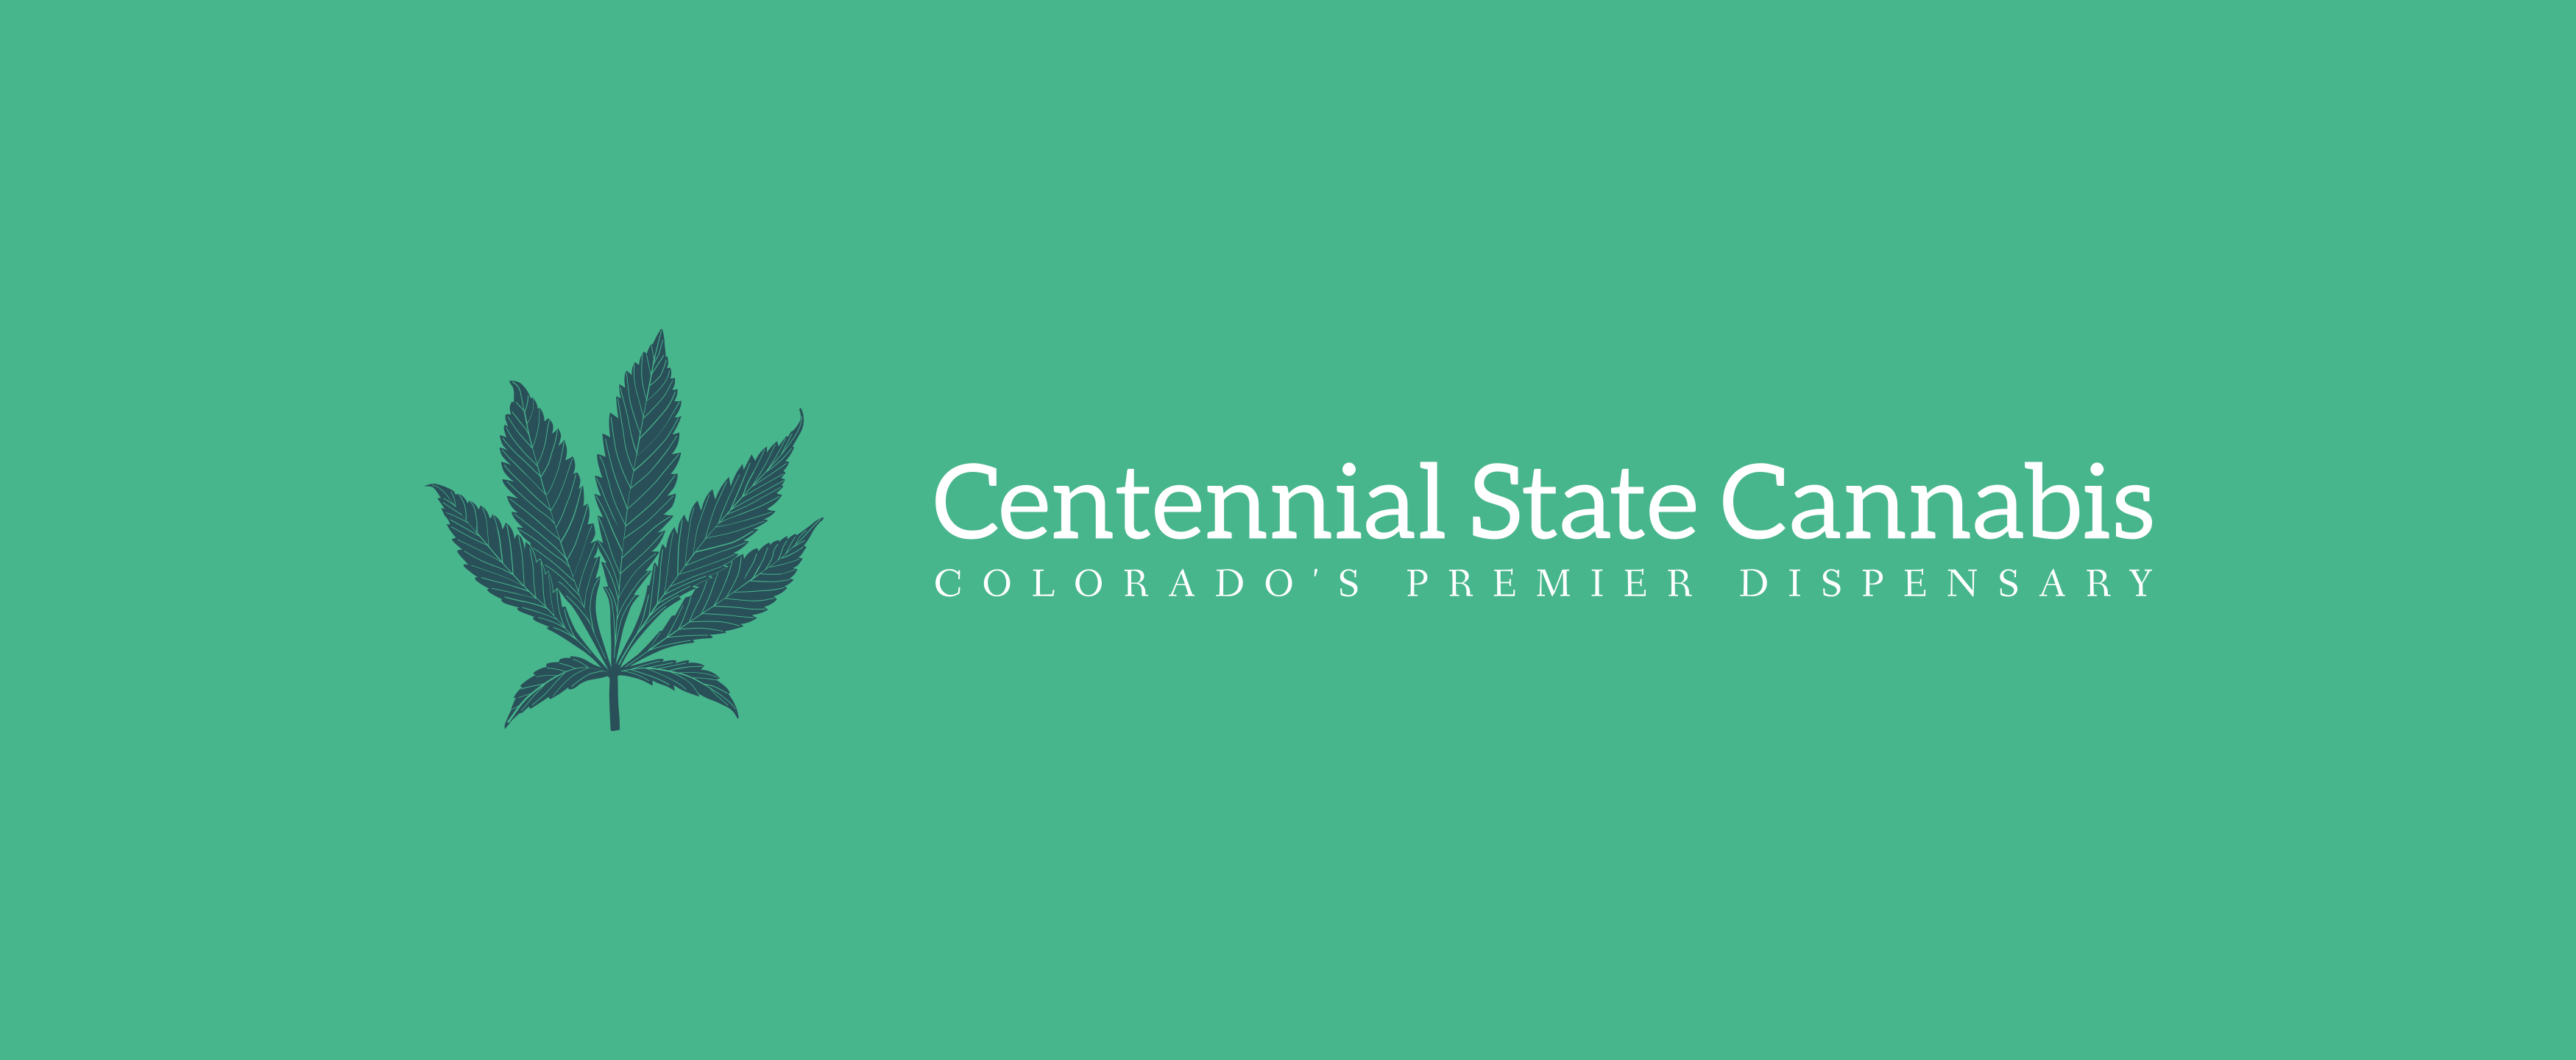 Centennial State Cannabis